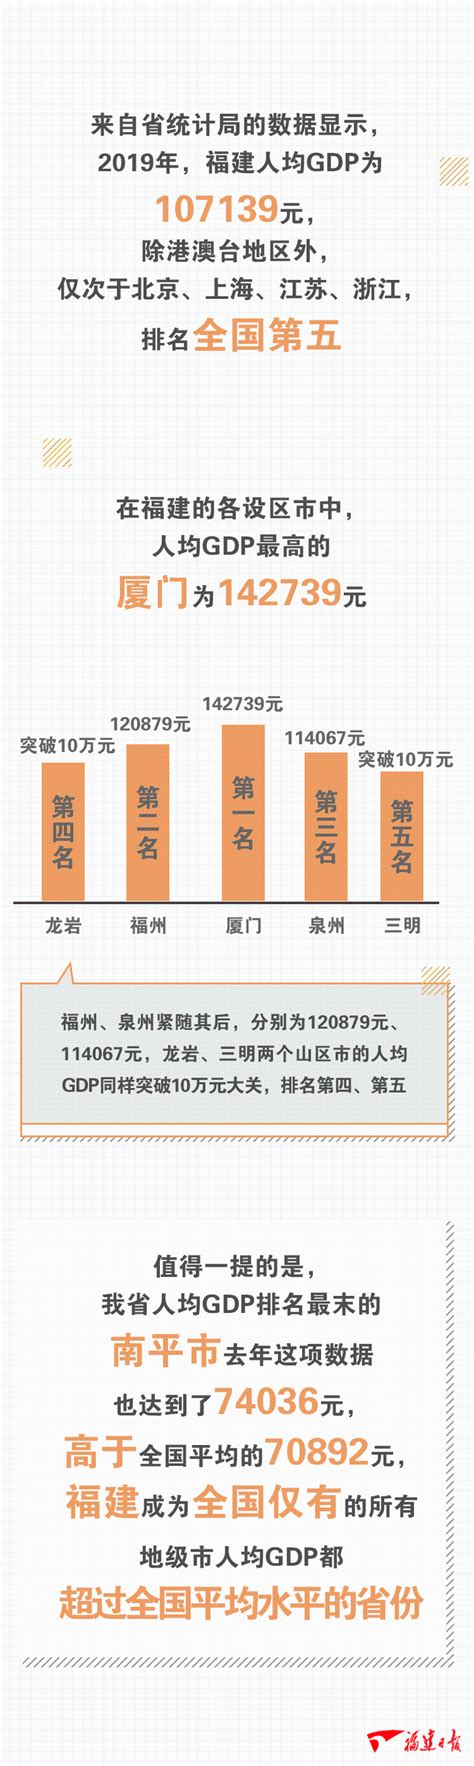 2018年福建省各市GDP总量及增速排行榜_产经_前瞻经济学人